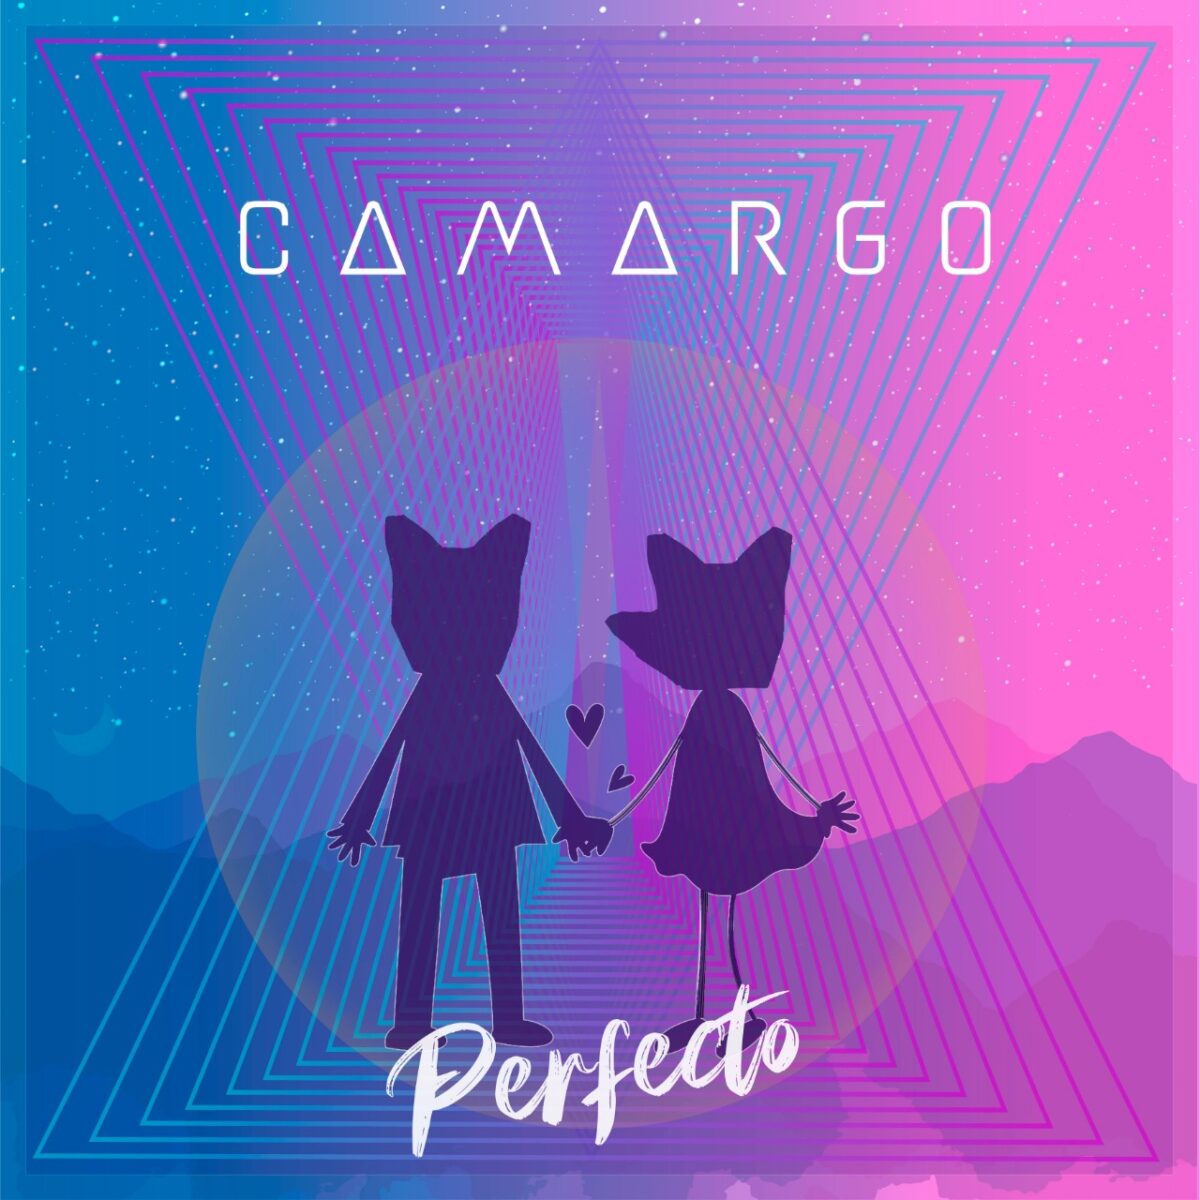 camargo lanza perfecto una cancion inspirada en el amor incondicional camargo perfecto 6